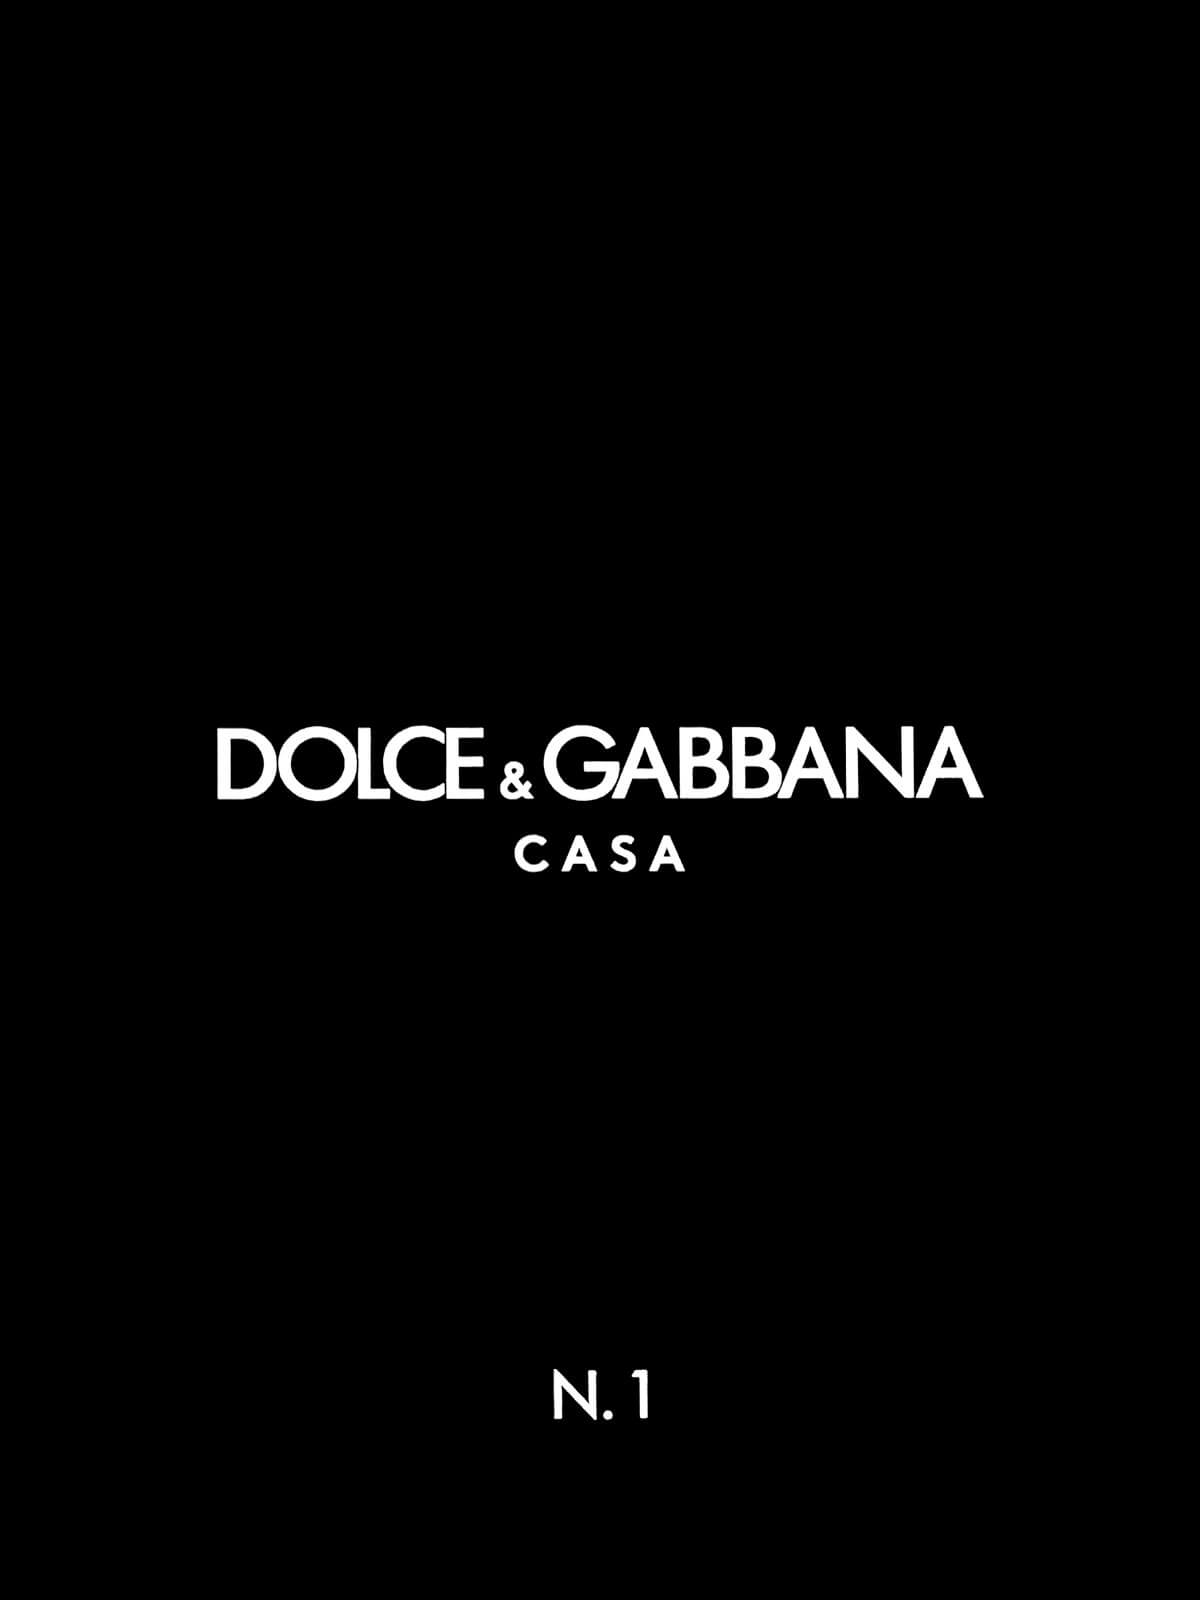 Seabrook Dolce & Gabbana Sol Carretto Wallpaper Mural - Rocco